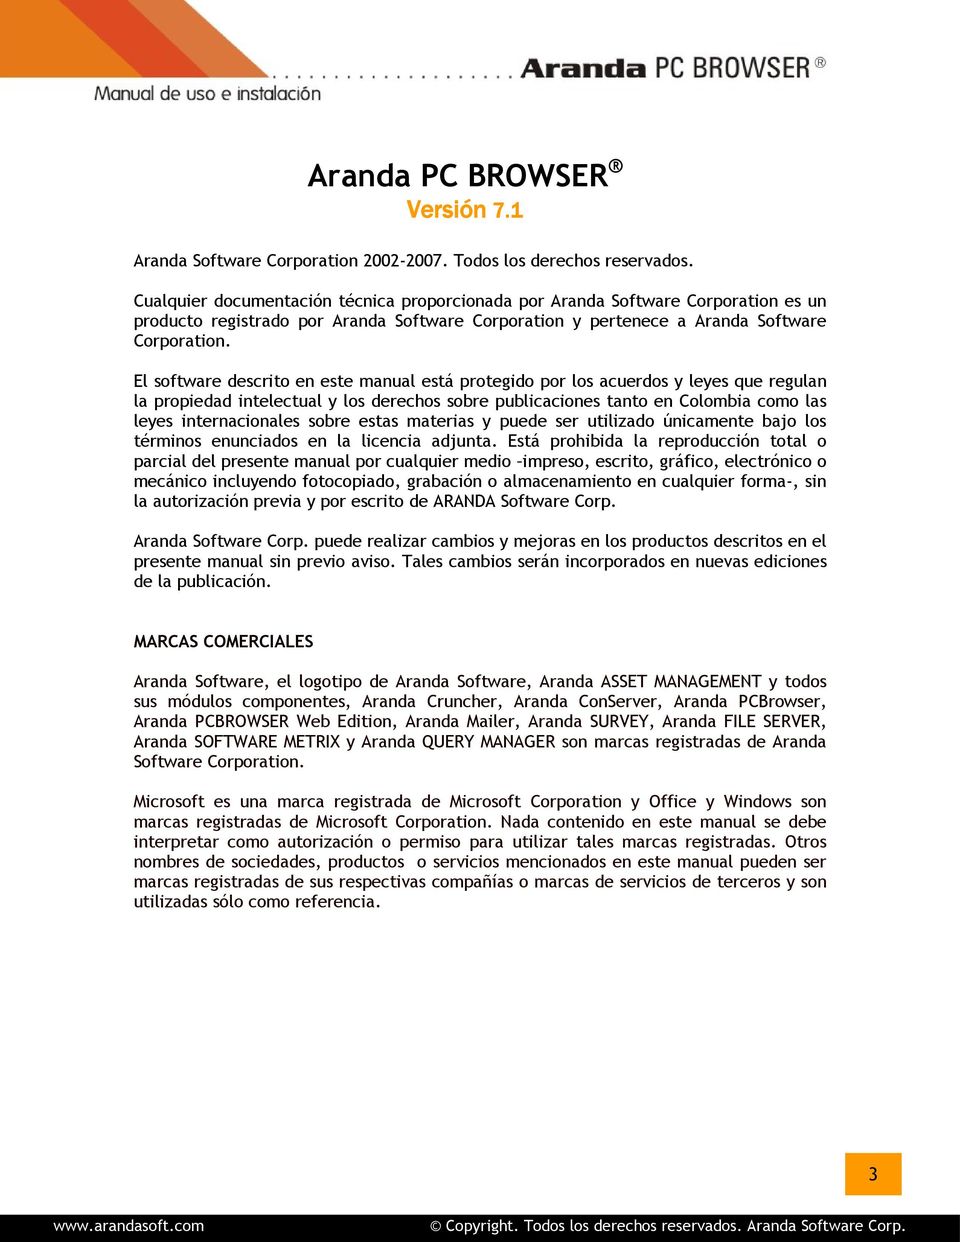 El software descrito en este manual está protegido por los acuerdos y leyes que regulan la propiedad intelectual y los derechos sobre publicaciones tanto en Colombia como las leyes internacionales